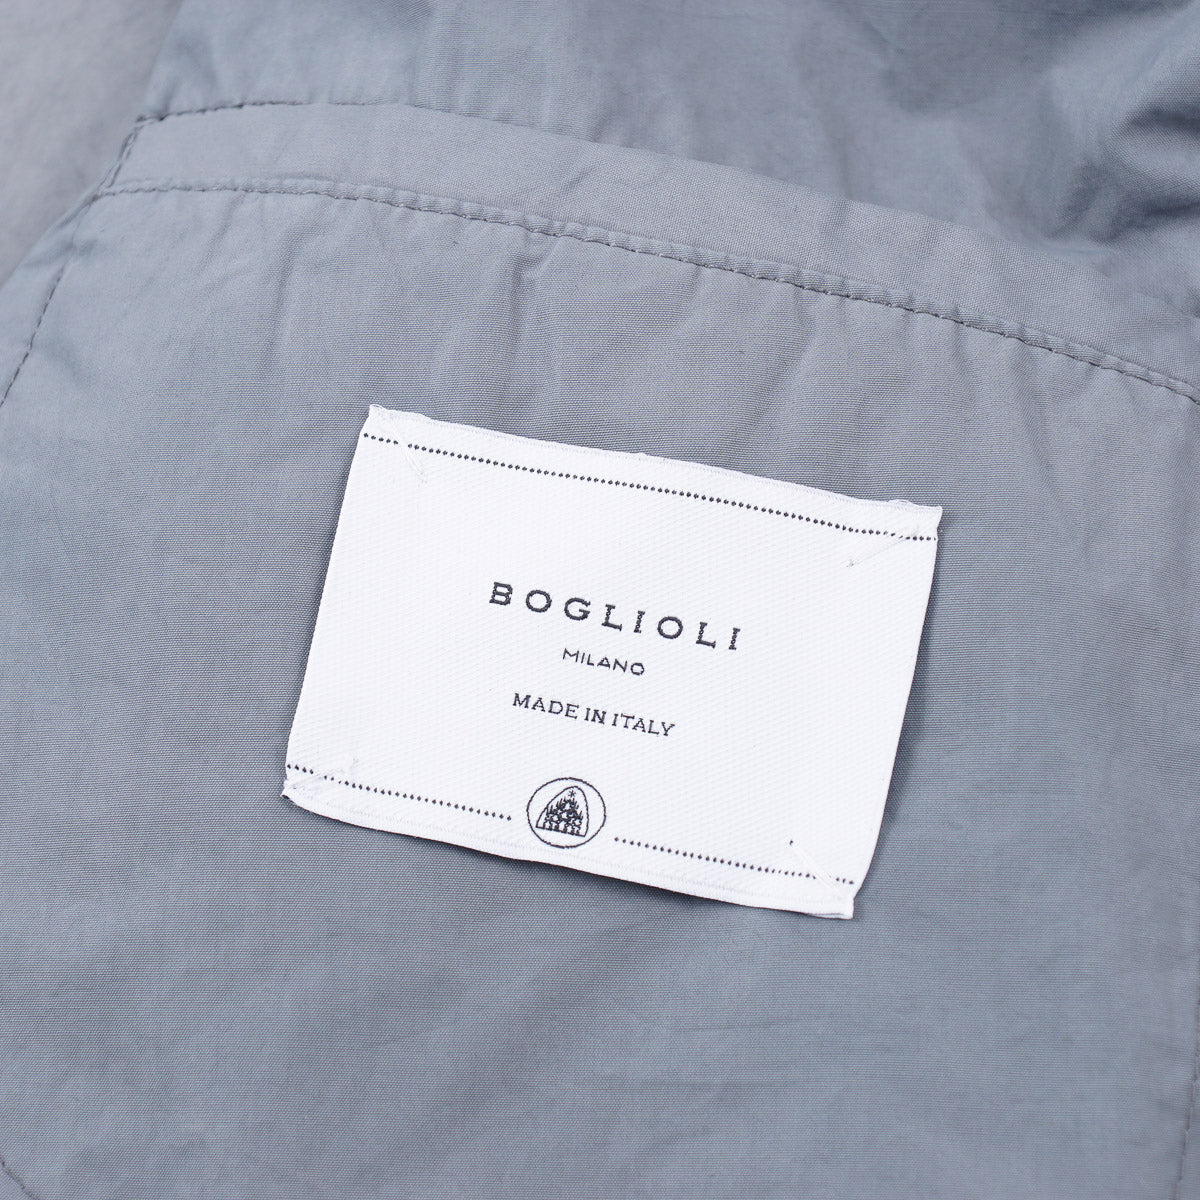 Boglioli Lightweight Water-Repellent Overcoat - Top Shelf Apparel